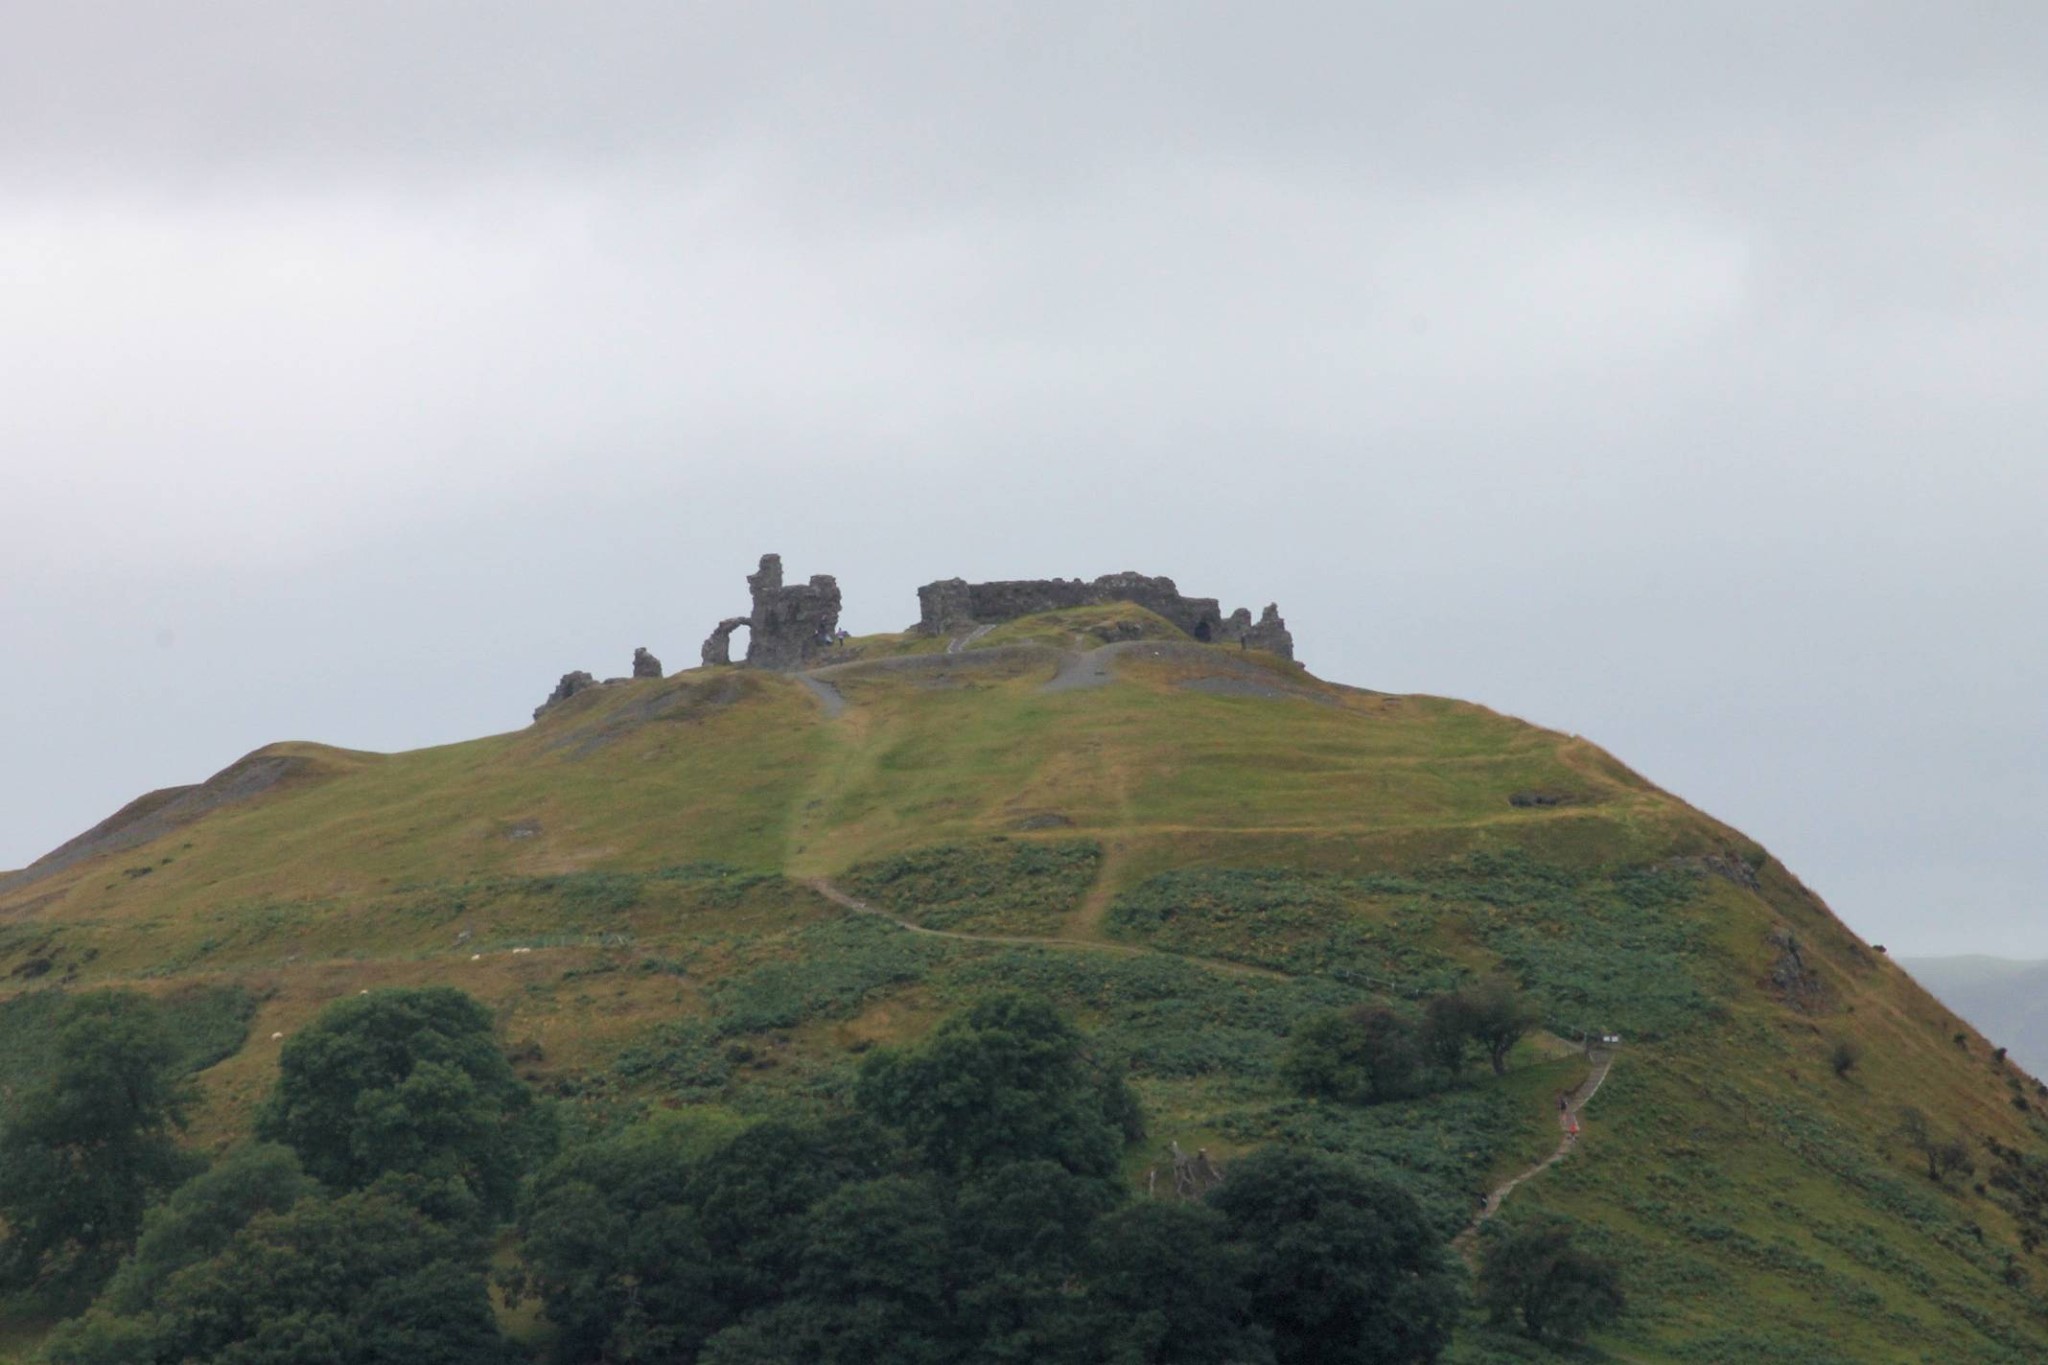 Castell Dinas Bran